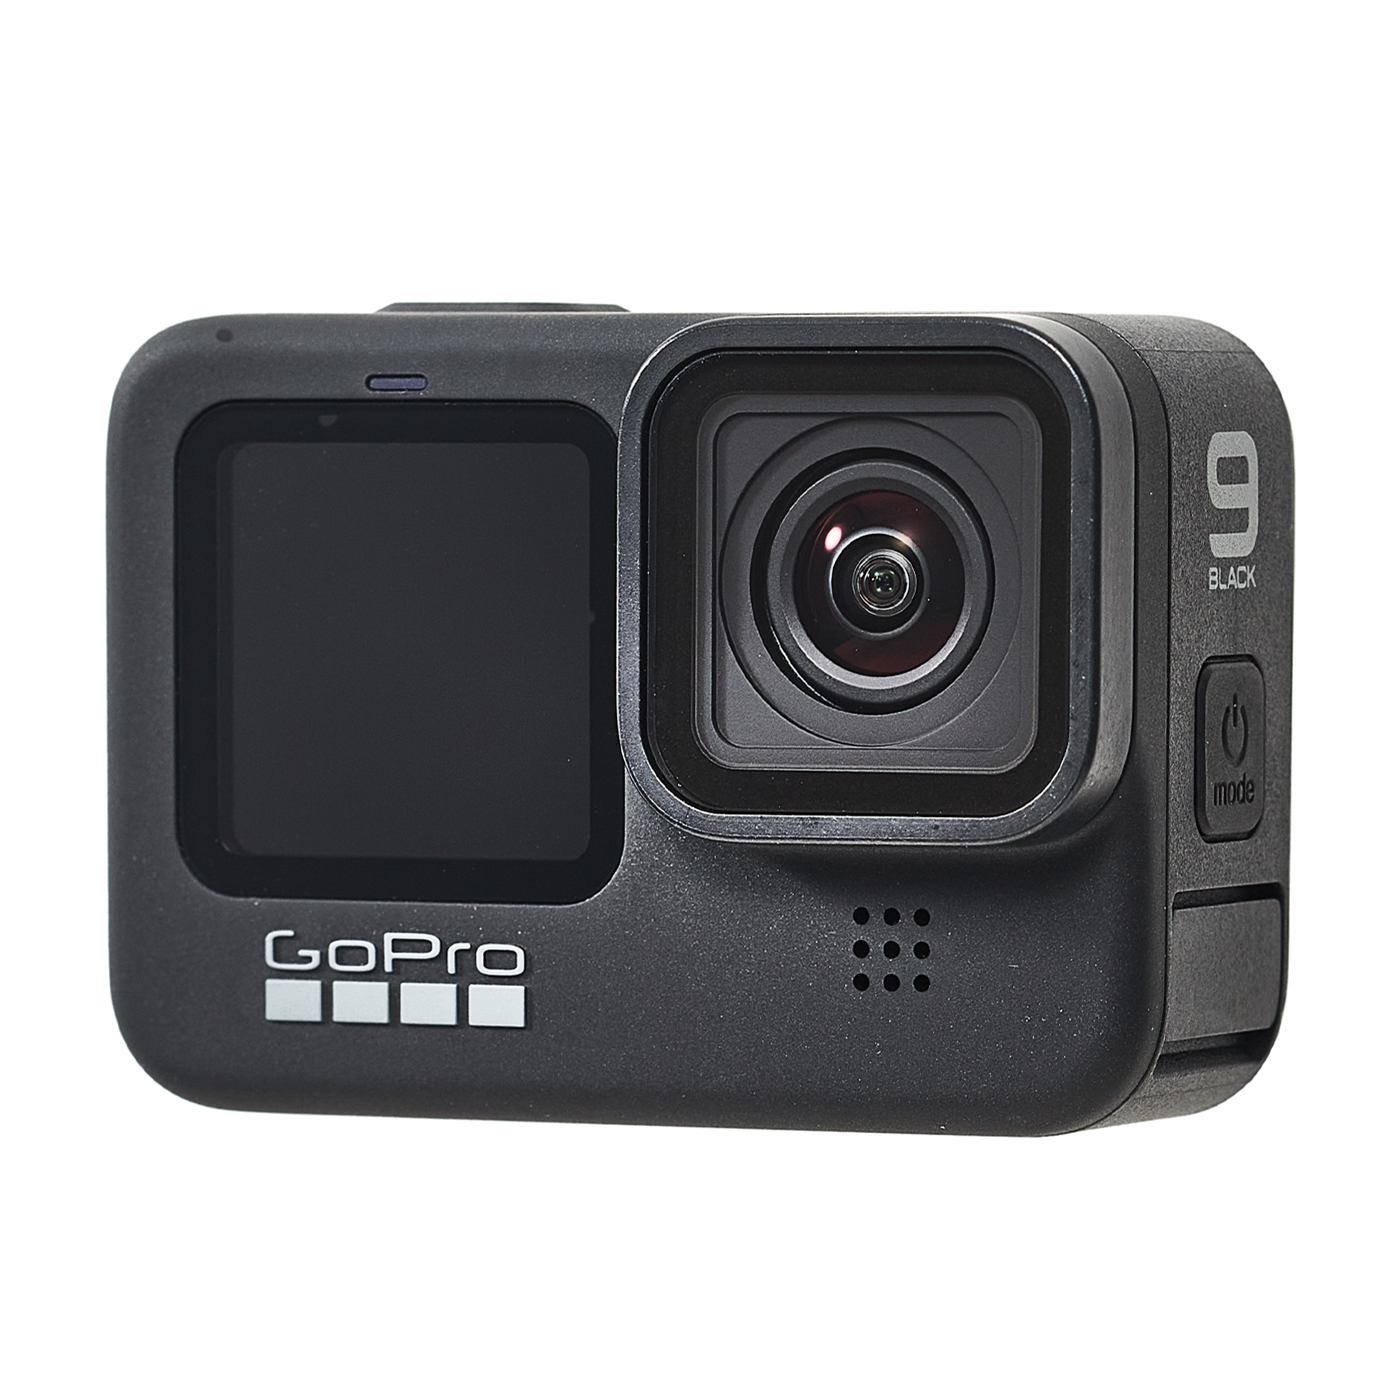 ついに再販開始！】 GOPPO アクションカメラ CHDHX-901-FW BLACK HERO9 ビデオカメラ - daloon.com